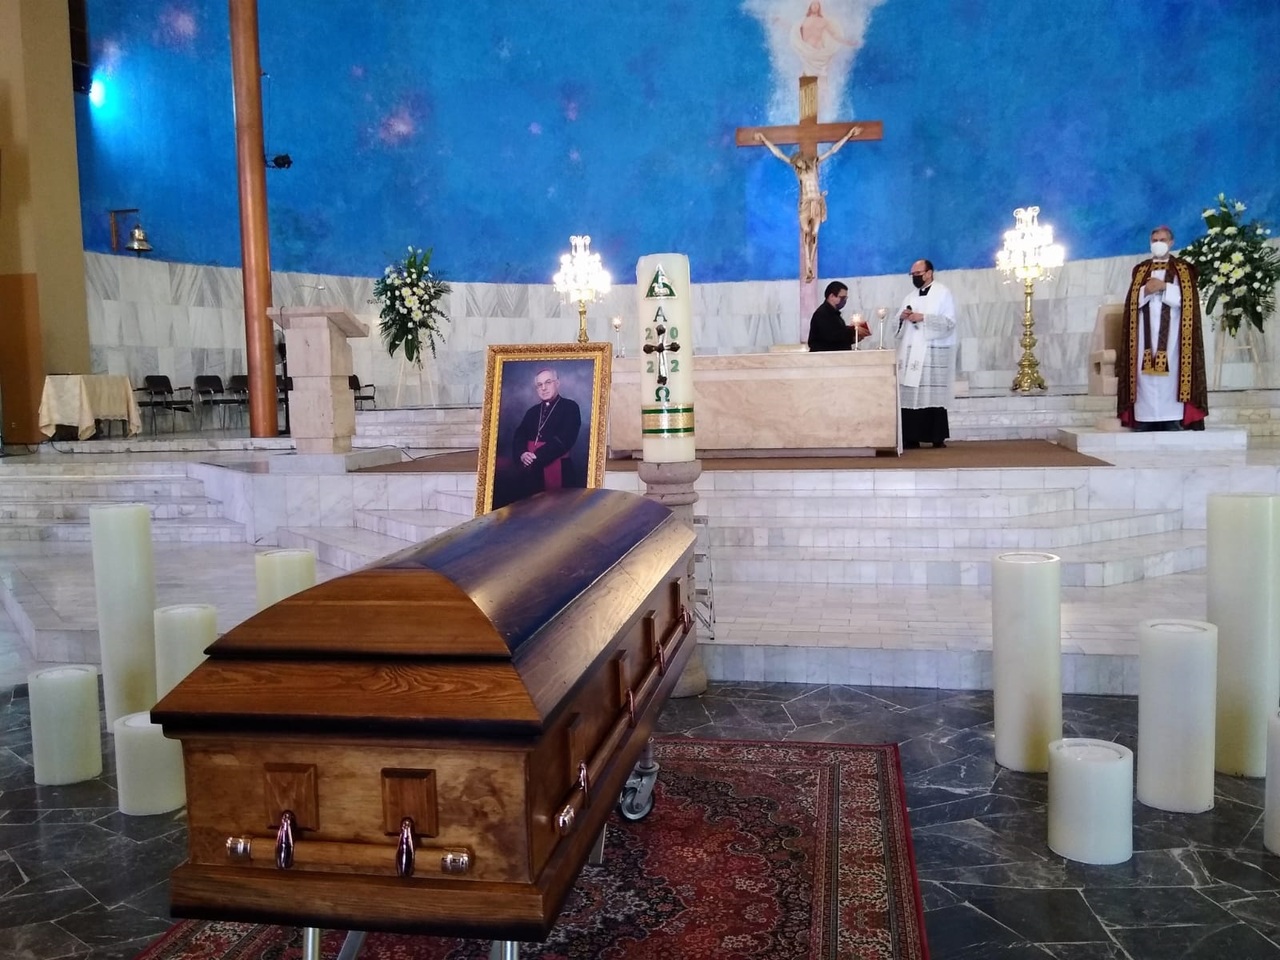 El féretro donde reposa el cuerpo sin vida de don José Guadalupe Galván Galindo llegó ayer domingo a la Parroquia de San José. (EDIE RUIZ)